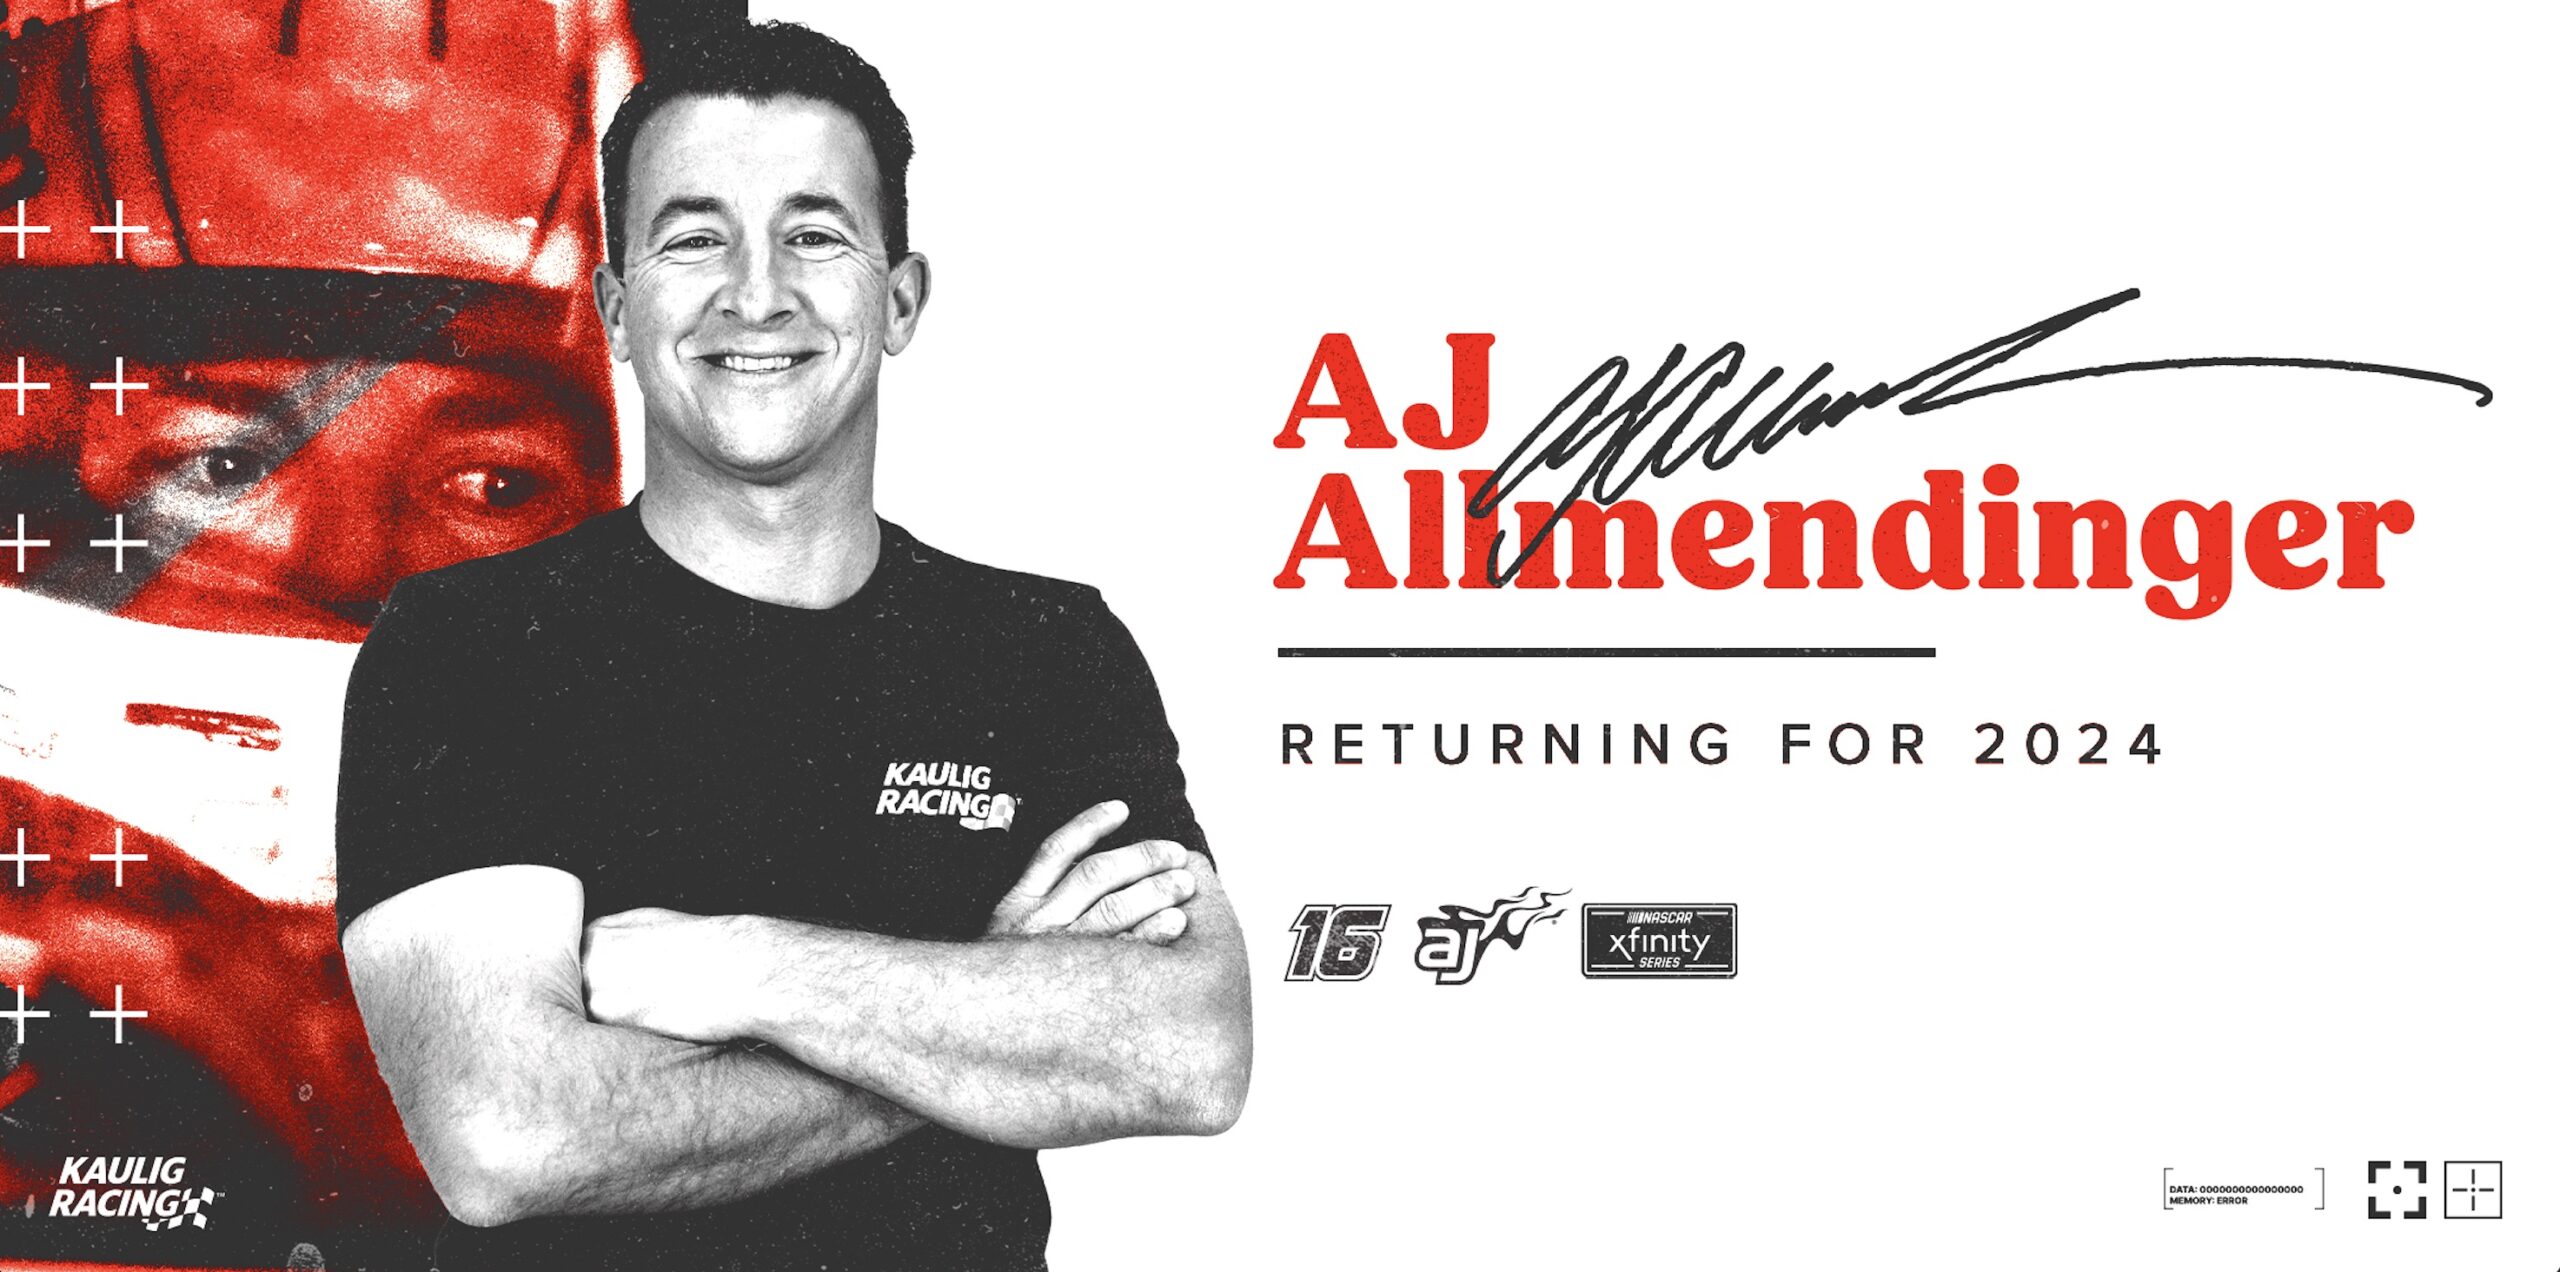 AJ Allmendinger Sent Back to Xfinity Series for 2024 Season